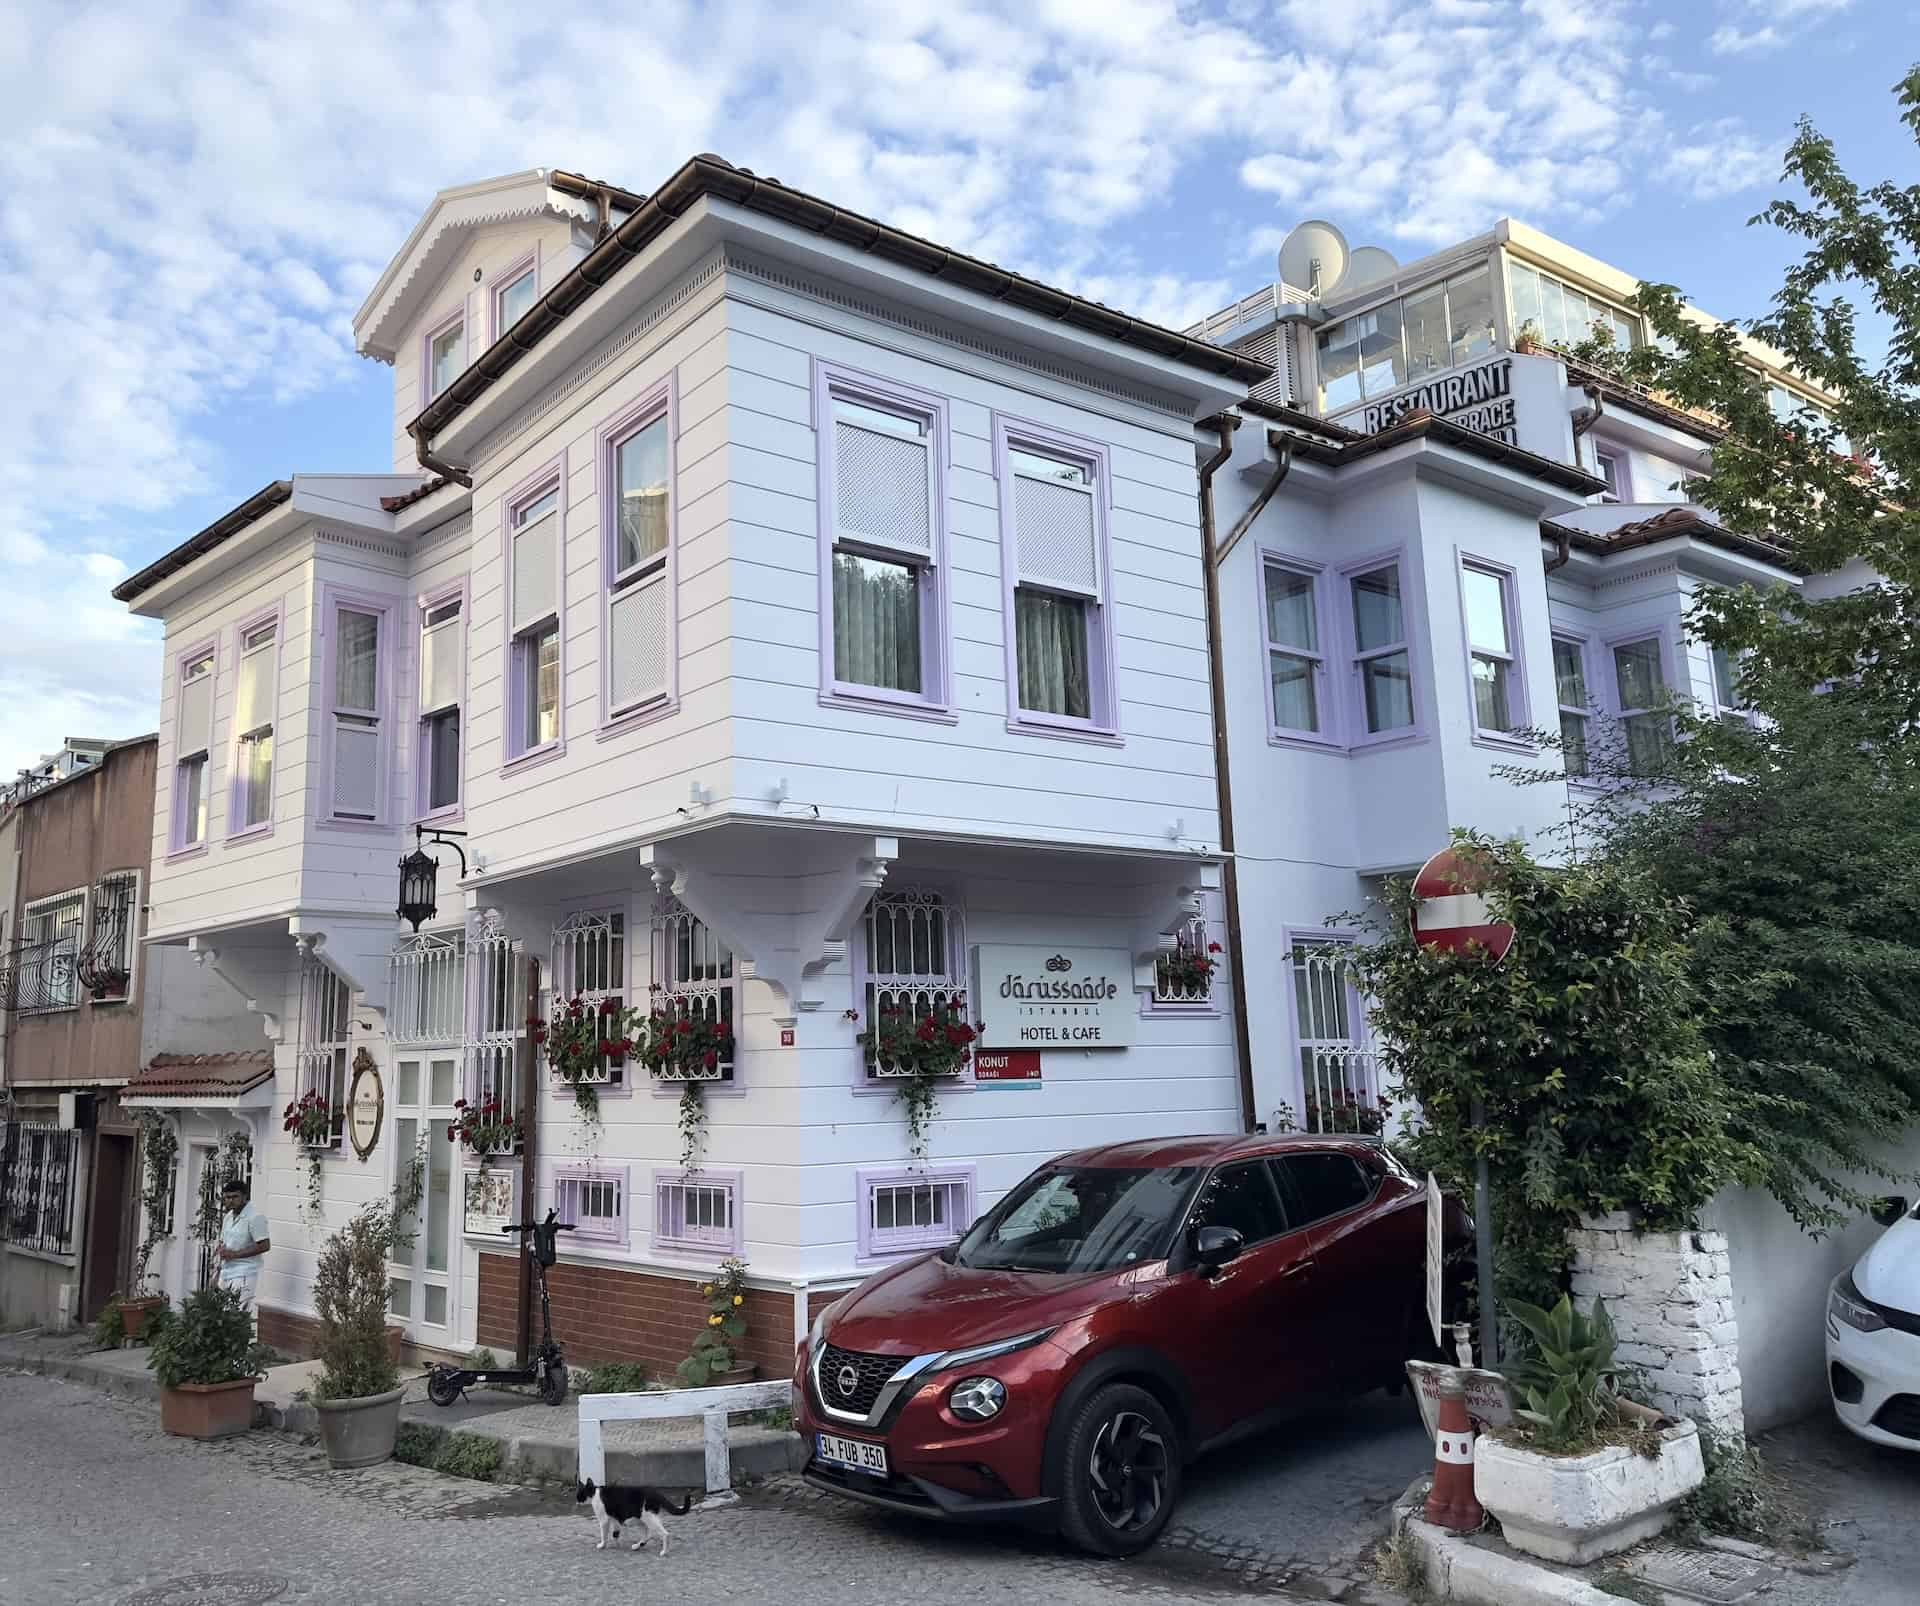 Darüssaade Hotel in Sultanahmet, Istanbul, Turkey